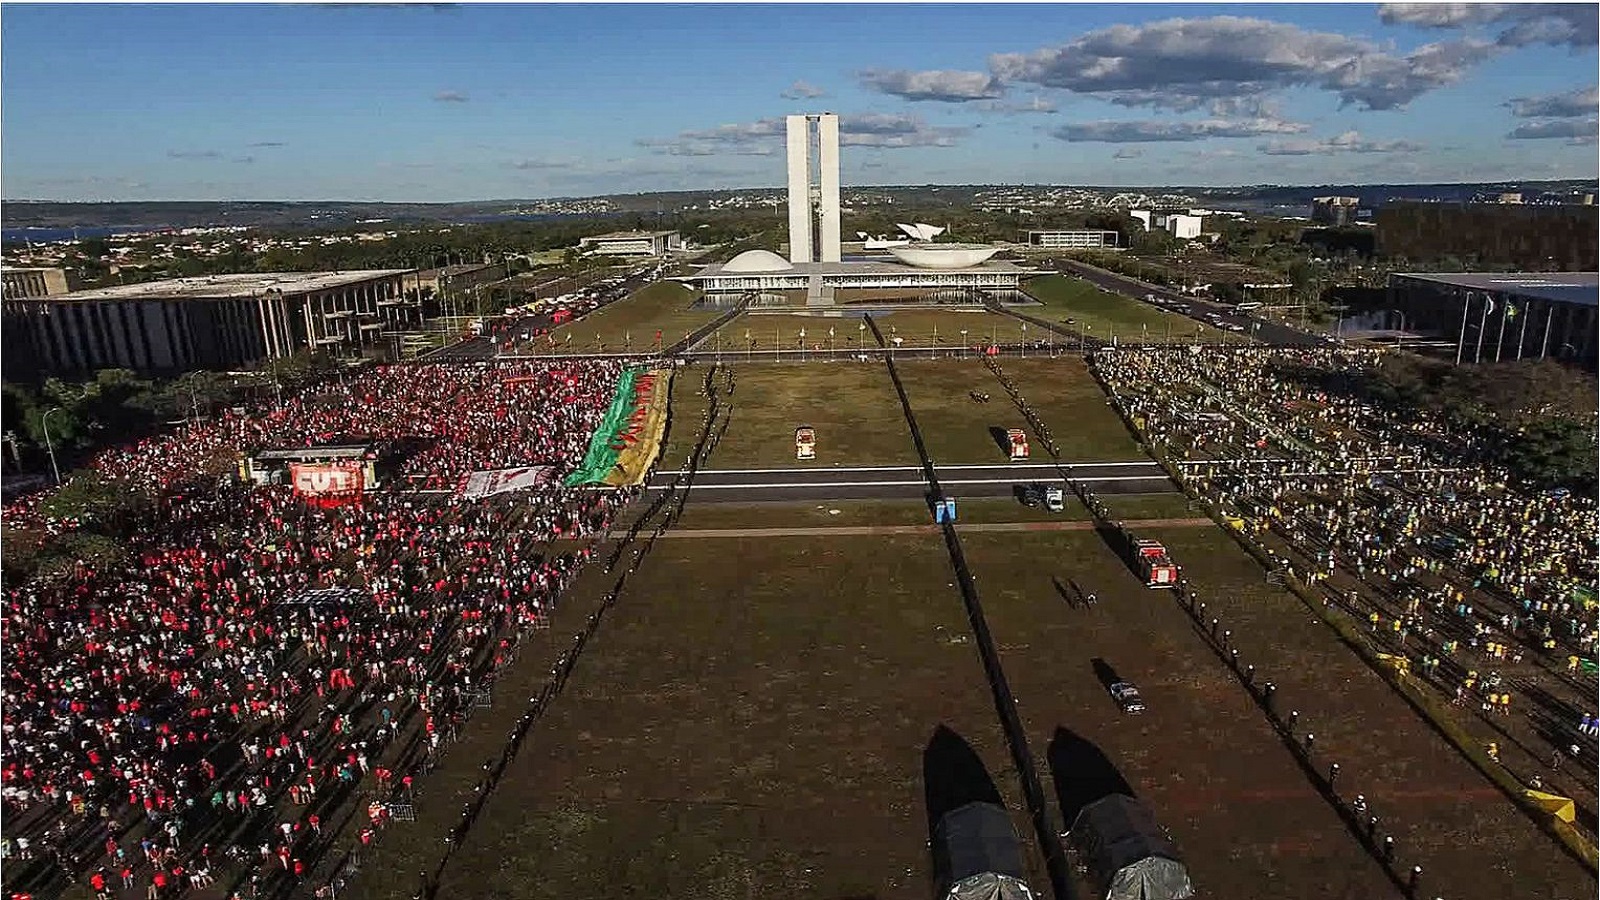 انقسام المتظاهرين أمام مبنى الكونغرس البرازيلي